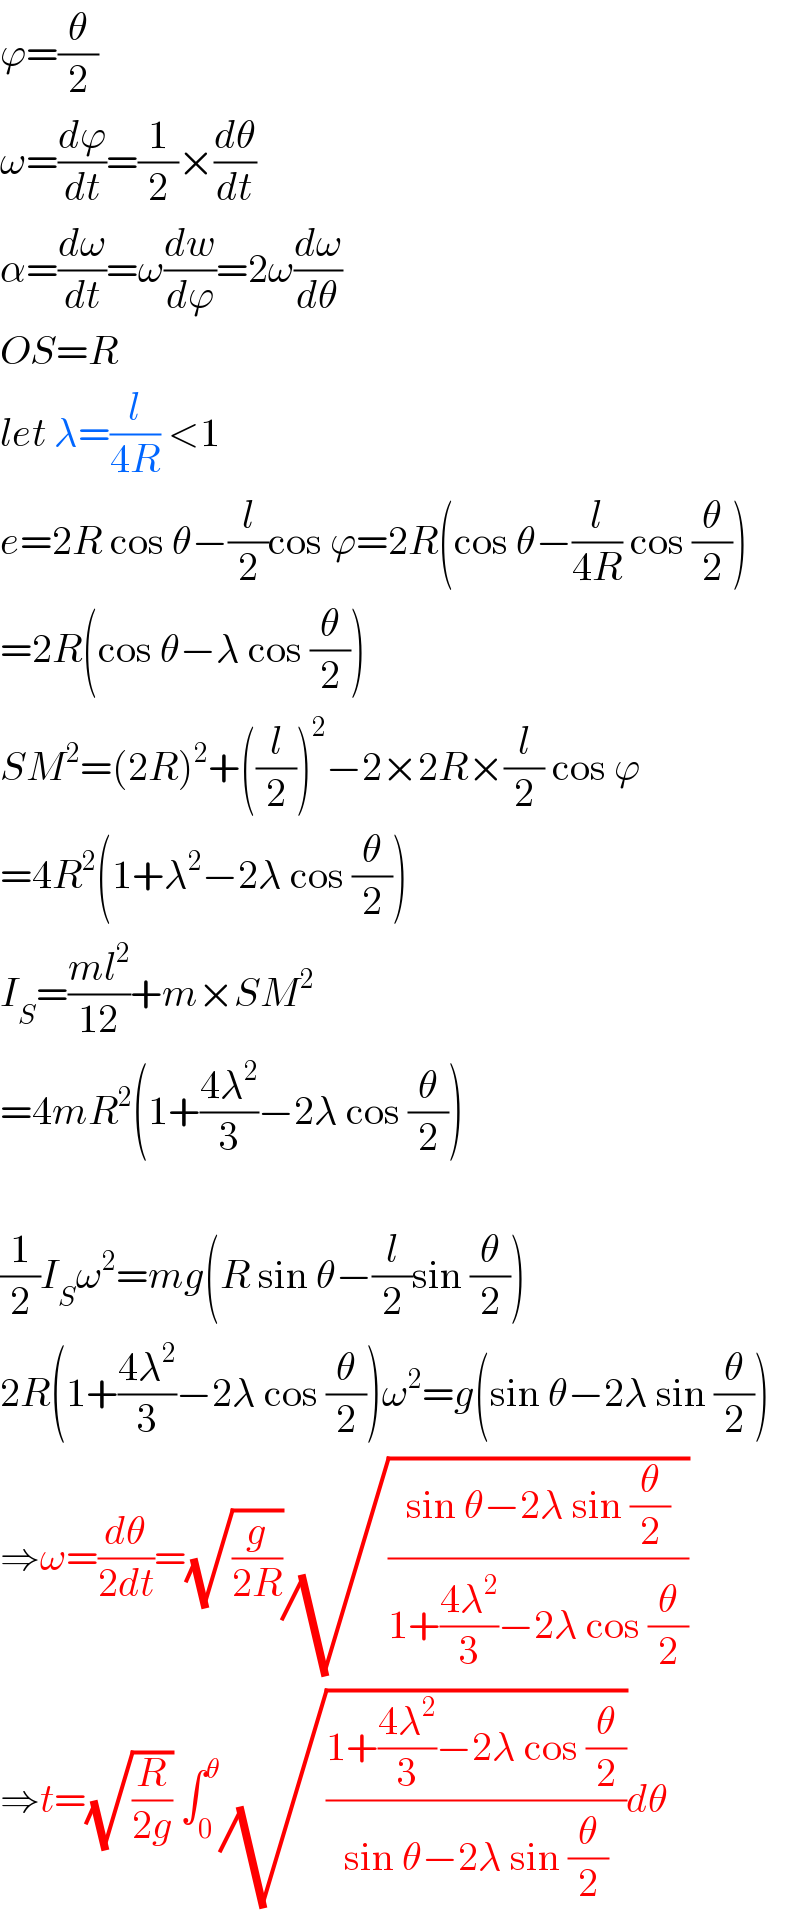 ϕ=(θ/2)  ω=(dϕ/dt)=(1/2)×(dθ/dt)  α=(dω/dt)=ω(dw/dϕ)=2ω(dω/dθ)  OS=R  let λ=(l/(4R)) <1  e=2R cos θ−(l/2)cos ϕ=2R(cos θ−(l/(4R)) cos (θ/2))  =2R(cos θ−λ cos (θ/2))  SM^2 =(2R)^2 +((l/2))^2 −2×2R×(l/2) cos ϕ  =4R^2 (1+λ^2 −2λ cos (θ/2))  I_S =((ml^2 )/(12))+m×SM^2   =4mR^2 (1+((4λ^2 )/3)−2λ cos (θ/2))    (1/2)I_S ω^2 =mg(R sin θ−(l/2)sin (θ/2))  2R(1+((4λ^2 )/3)−2λ cos (θ/2))ω^2 =g(sin θ−2λ sin (θ/2))  ⇒ω=(dθ/(2dt))=(√(g/(2R)))(√((sin θ−2λ sin (θ/2))/(1+((4λ^2 )/3)−2λ cos (θ/2))))  ⇒t=(√(R/(2g))) ∫_0 ^θ (√((1+((4λ^2 )/3)−2λ cos (θ/2))/(sin θ−2λ sin (θ/2))))dθ  